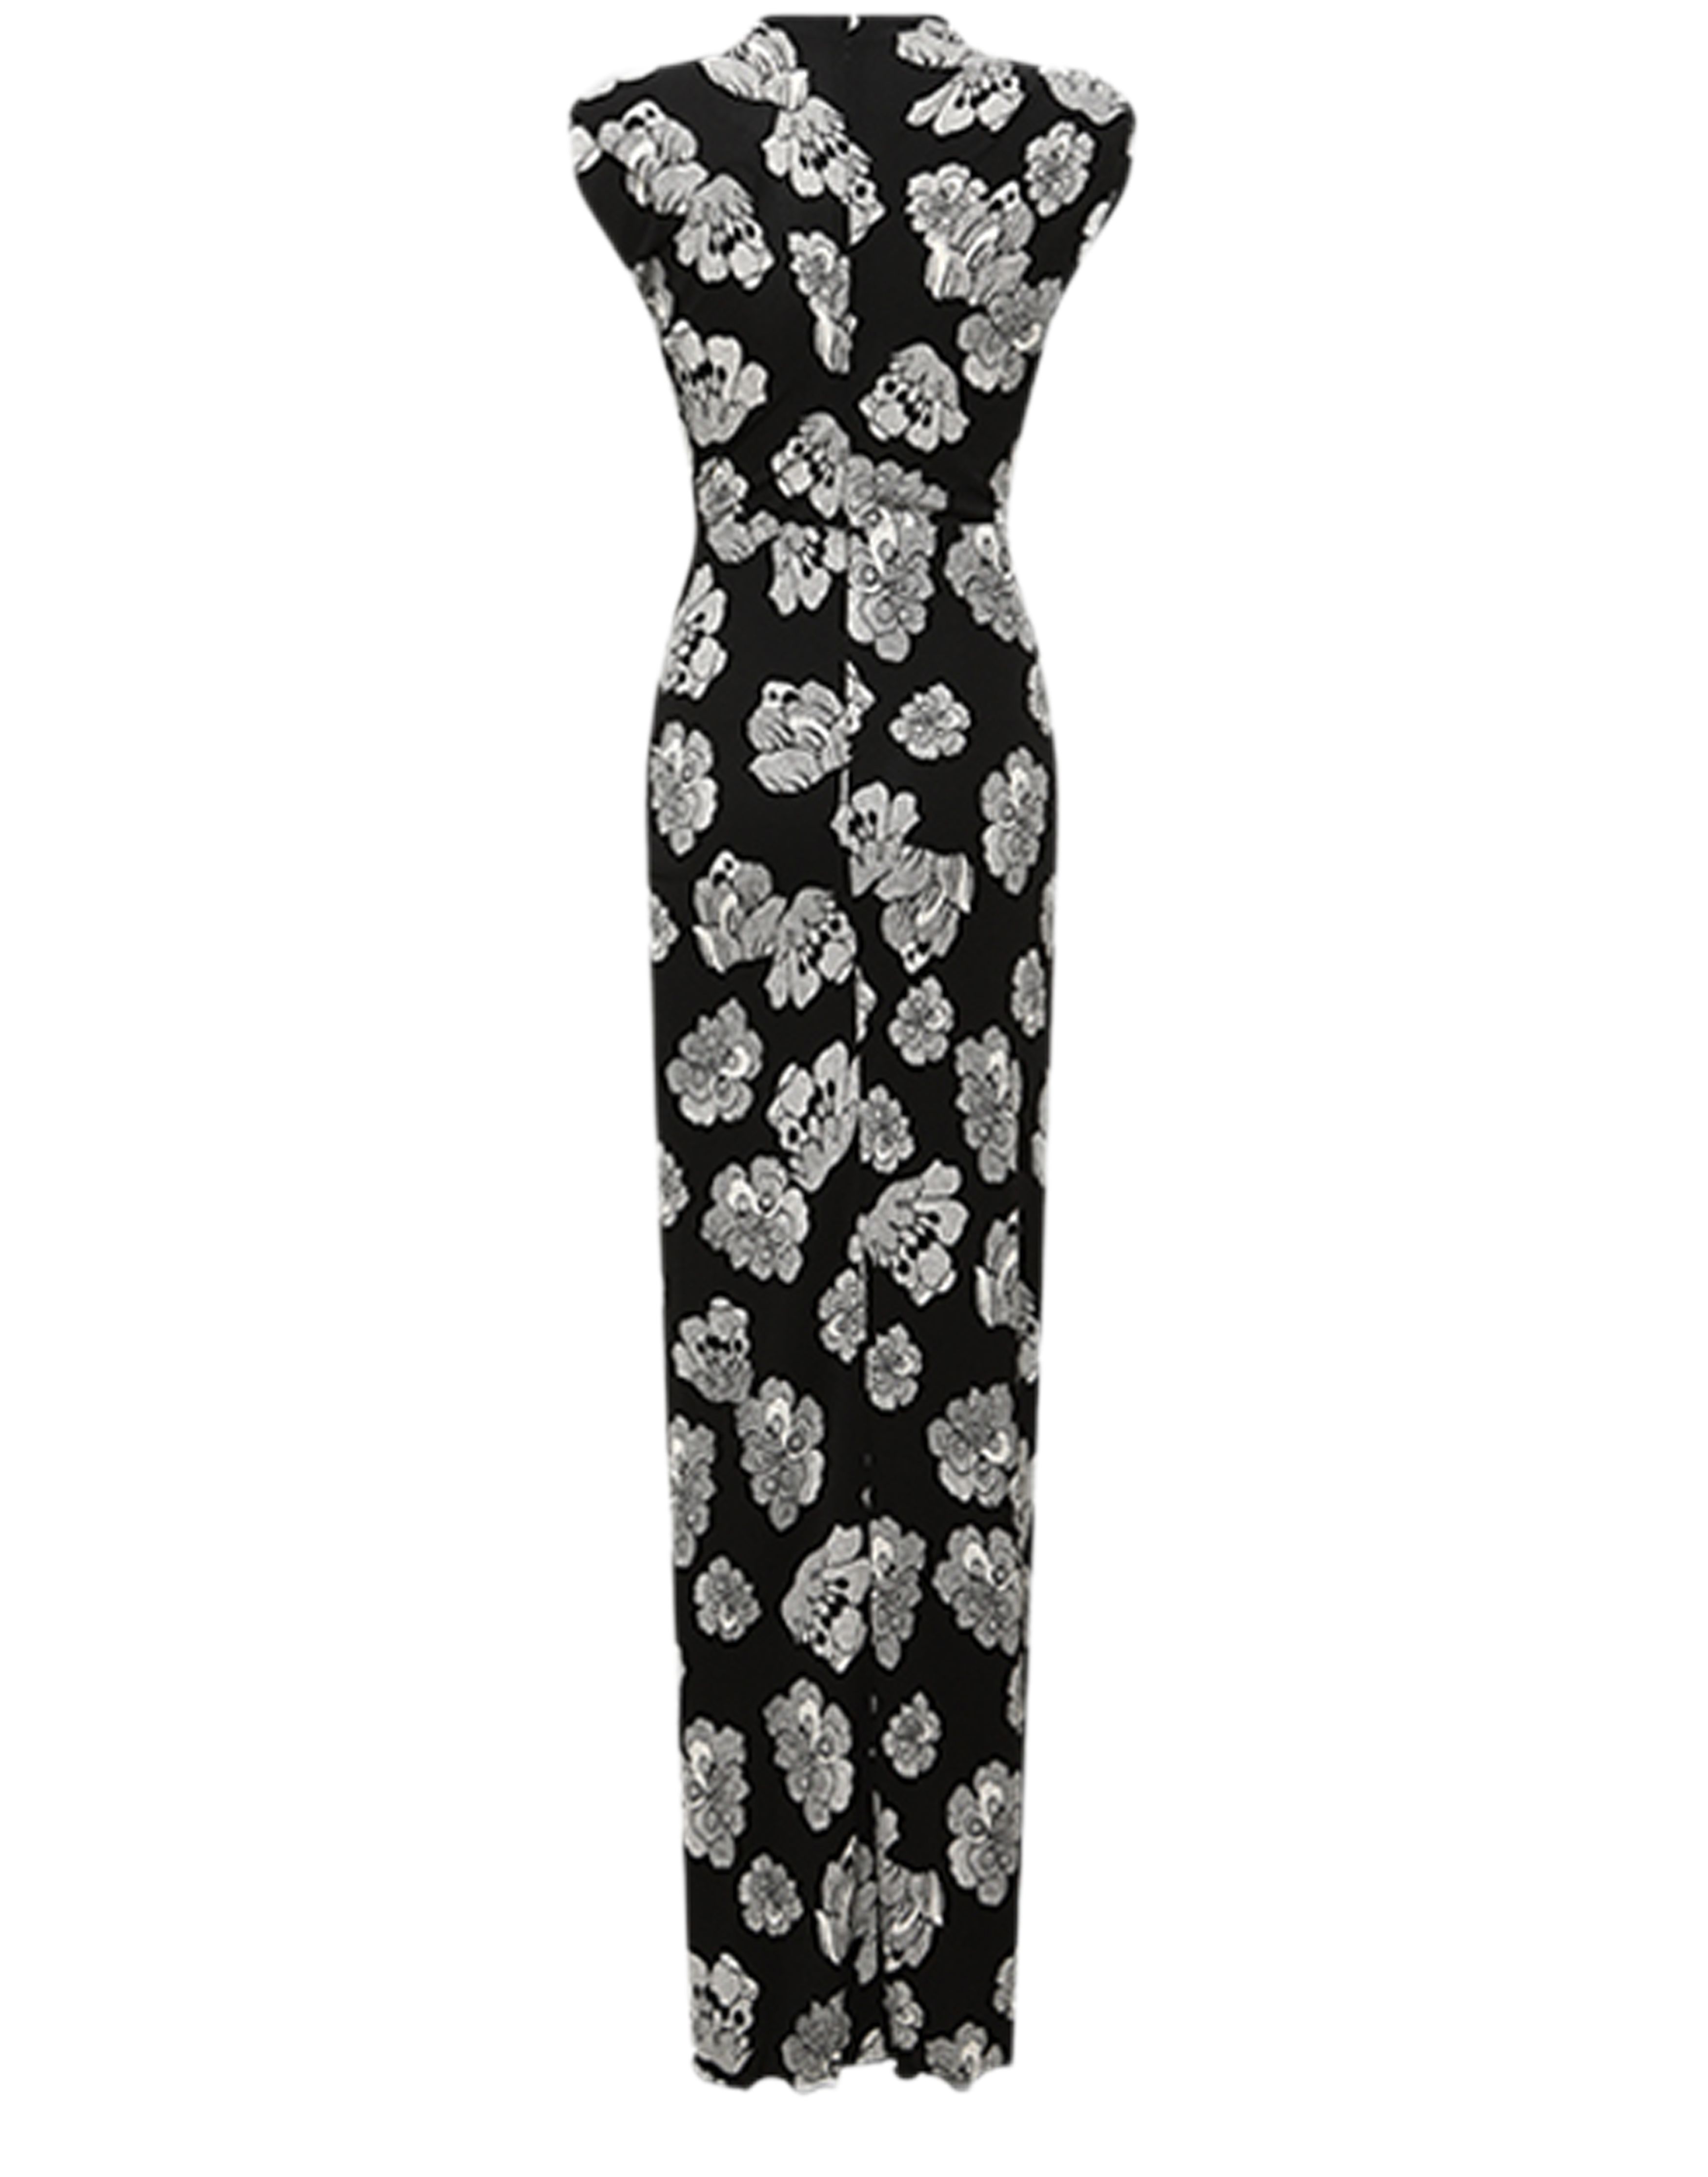 Diane Von Furstenberg Apollo dress